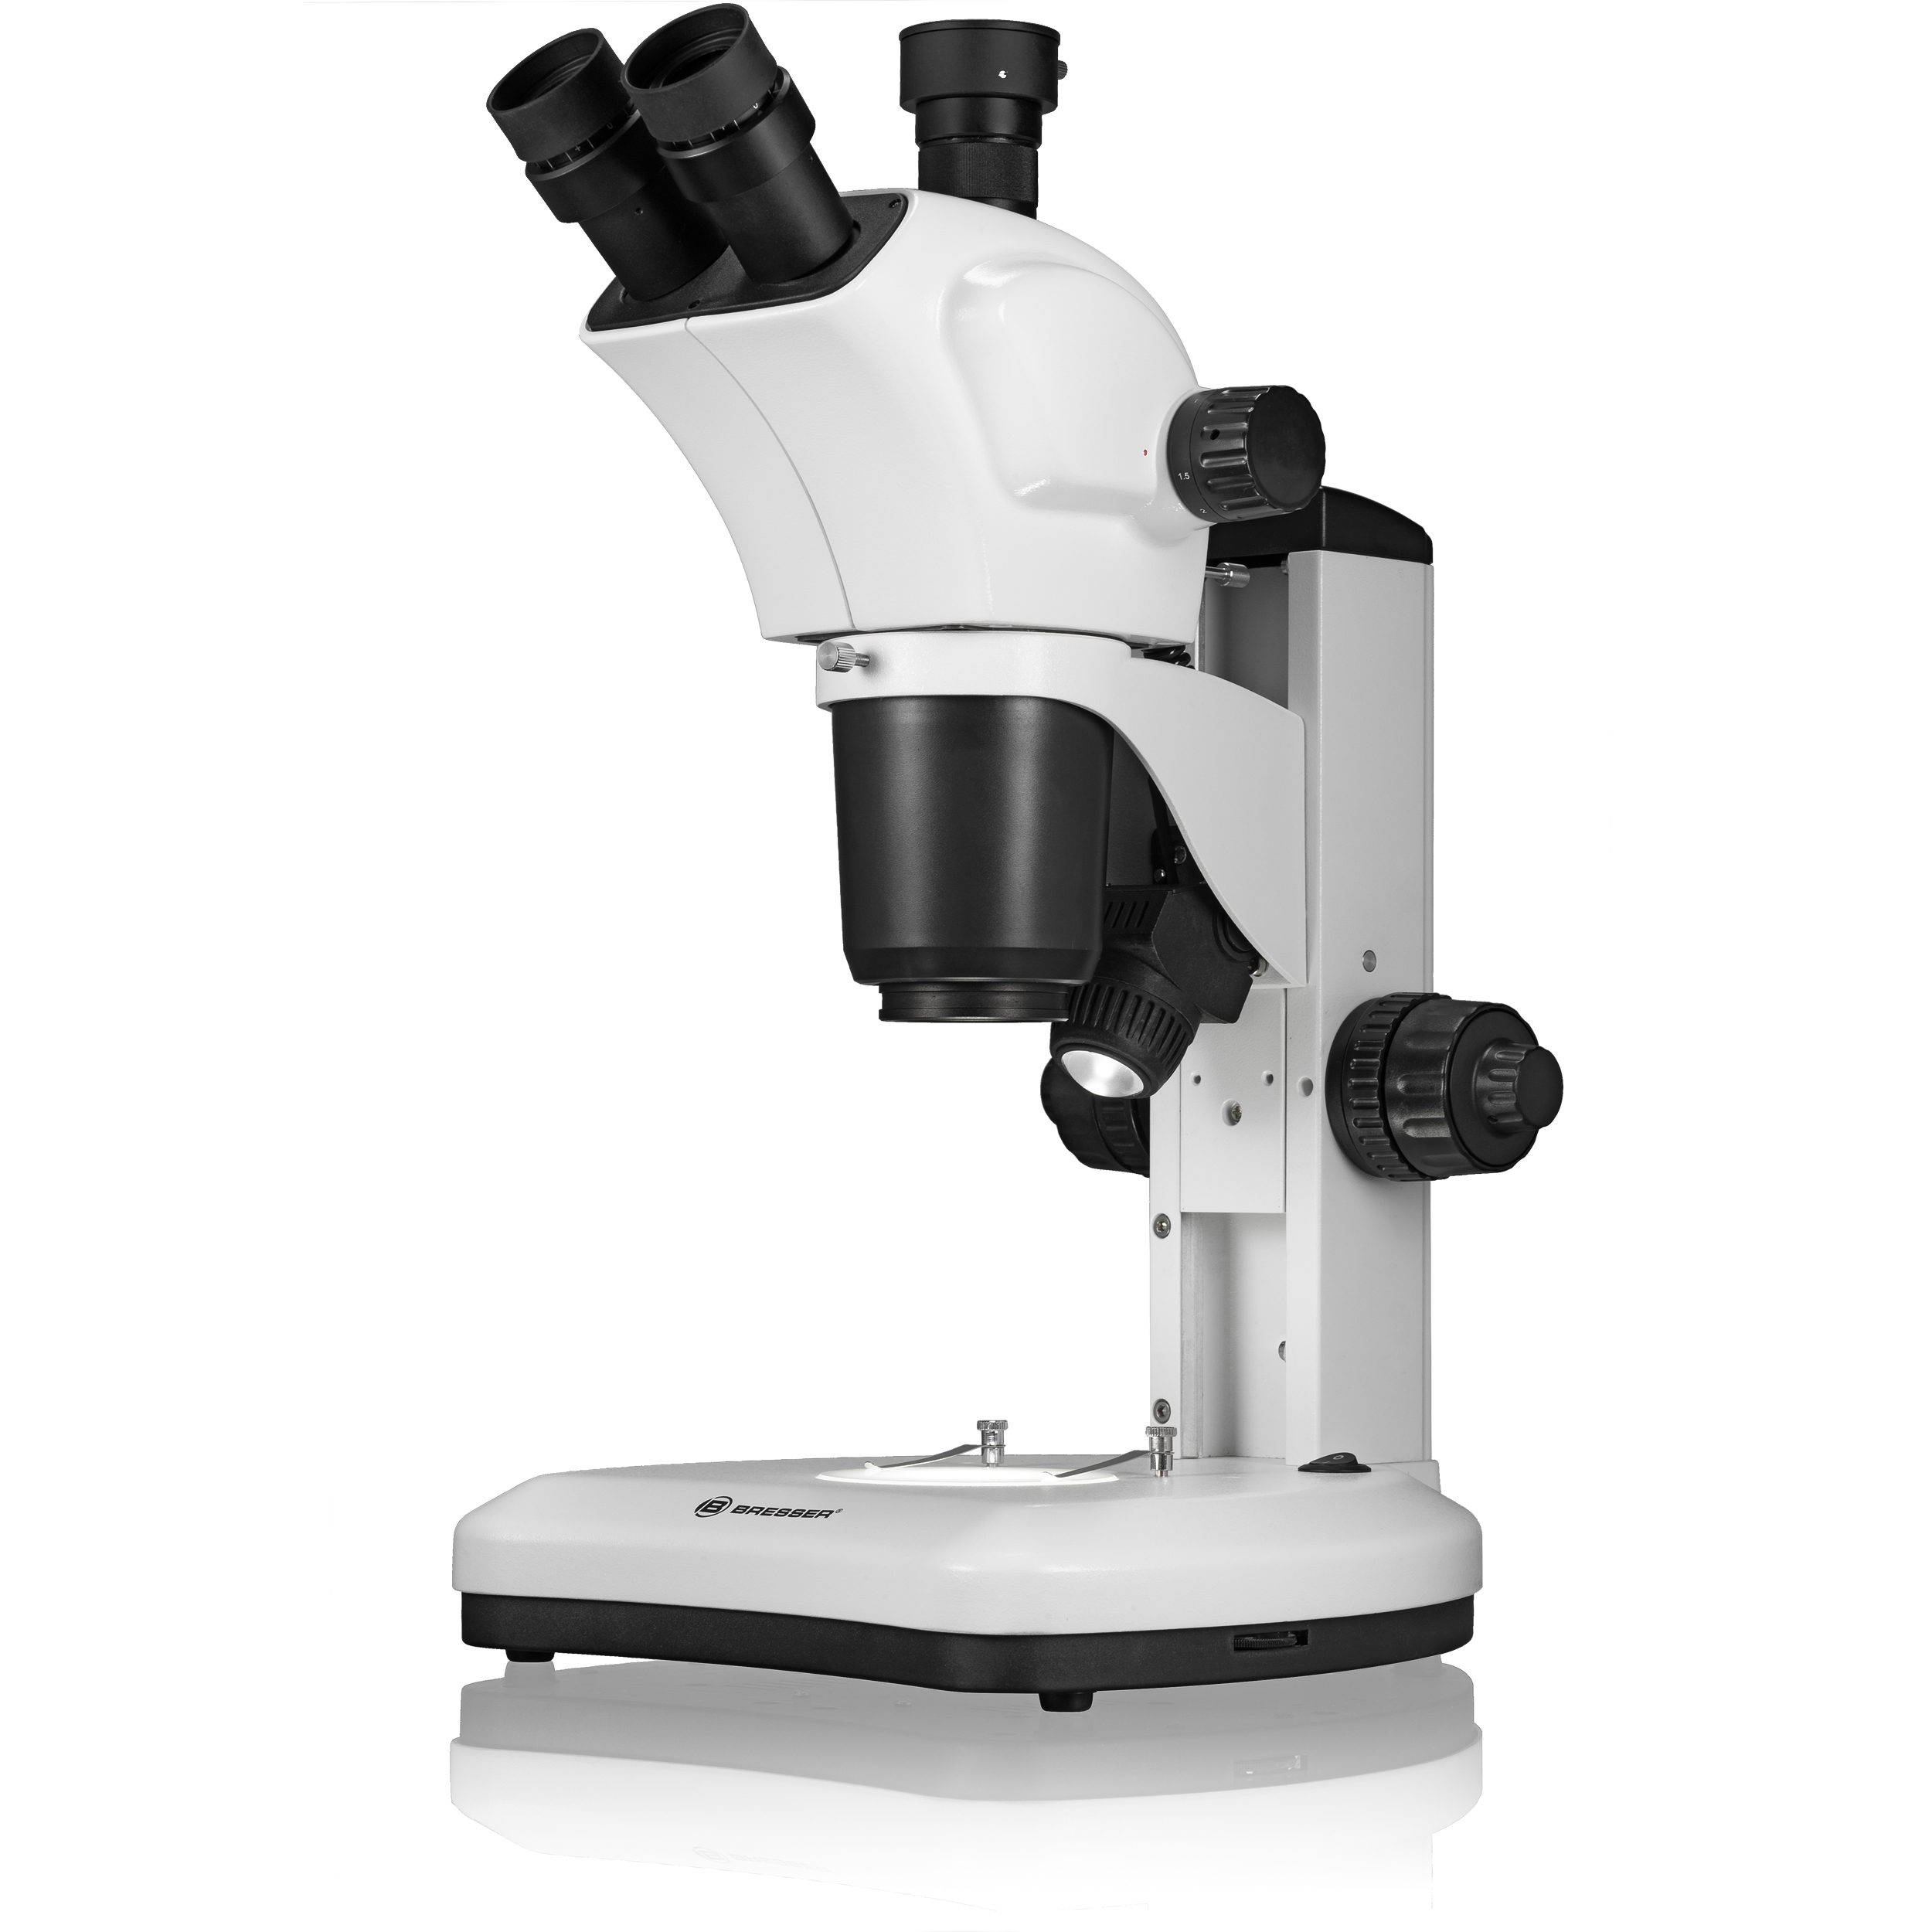 BRESSER Science ETD-301 7-63x Trino Zoom Stereo-Microscope